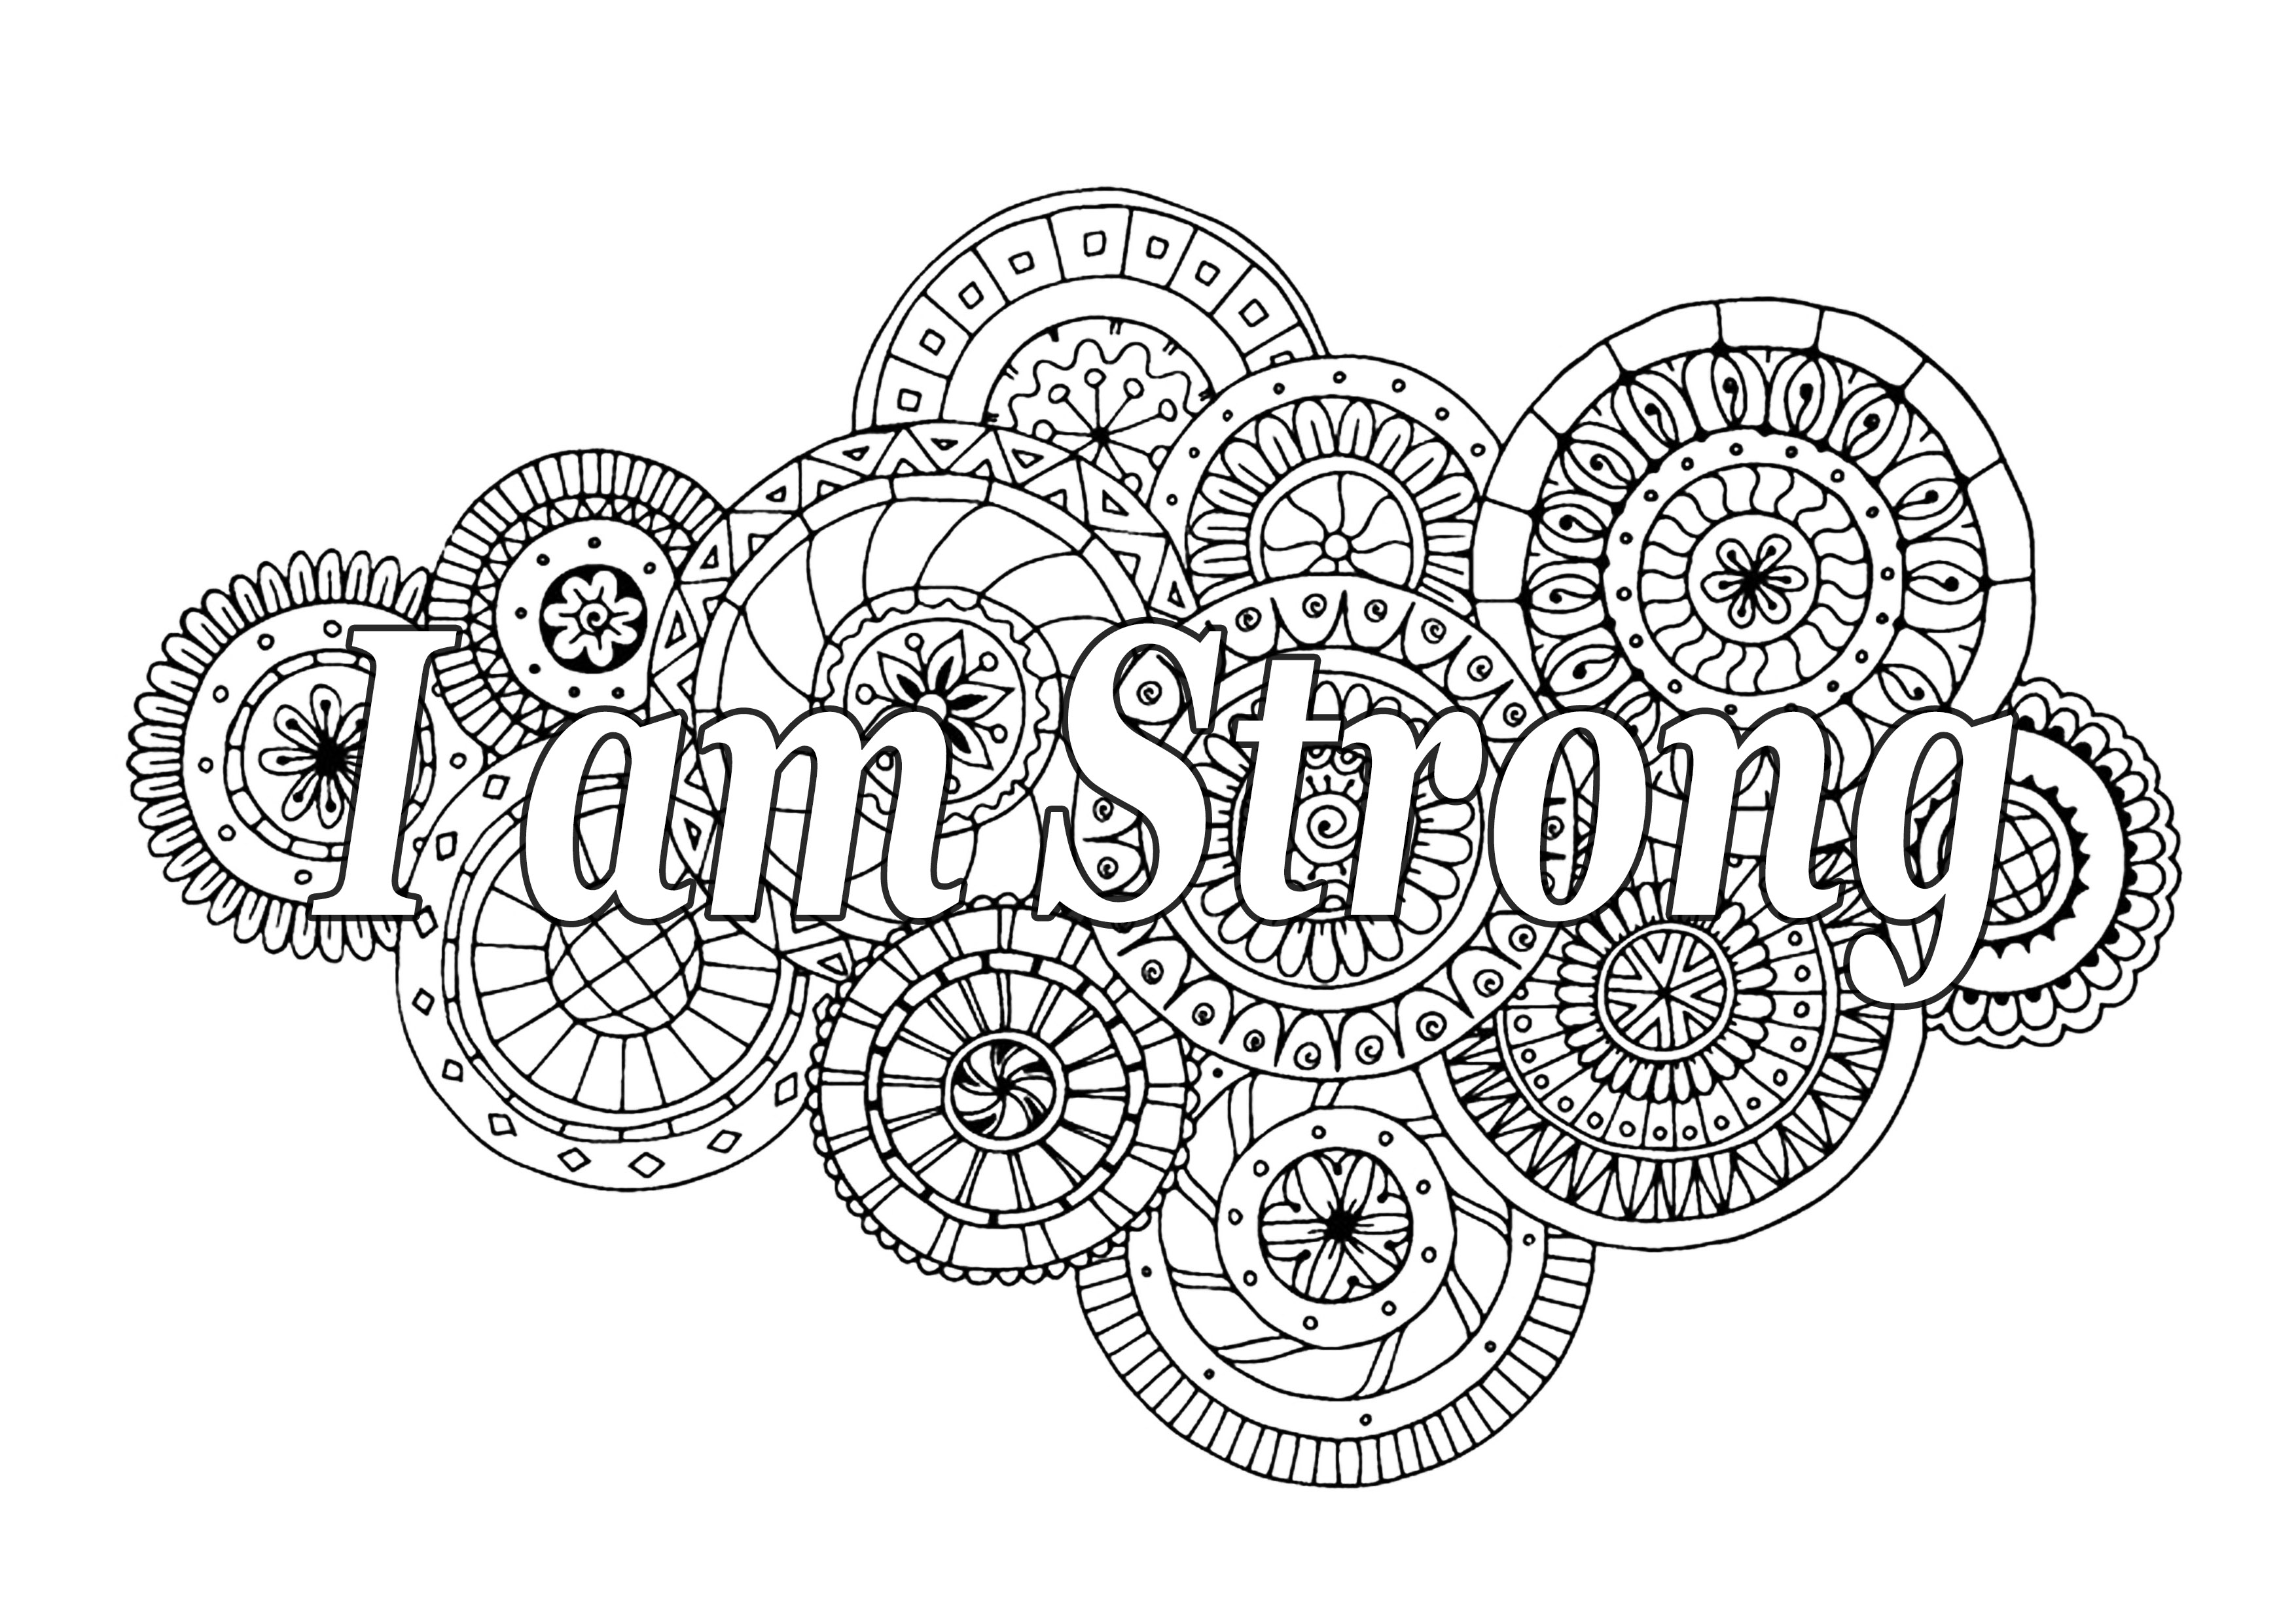 Ich bin stark. Ein motivierendes Zitat, mit schönen Mandalas im Hintergrund